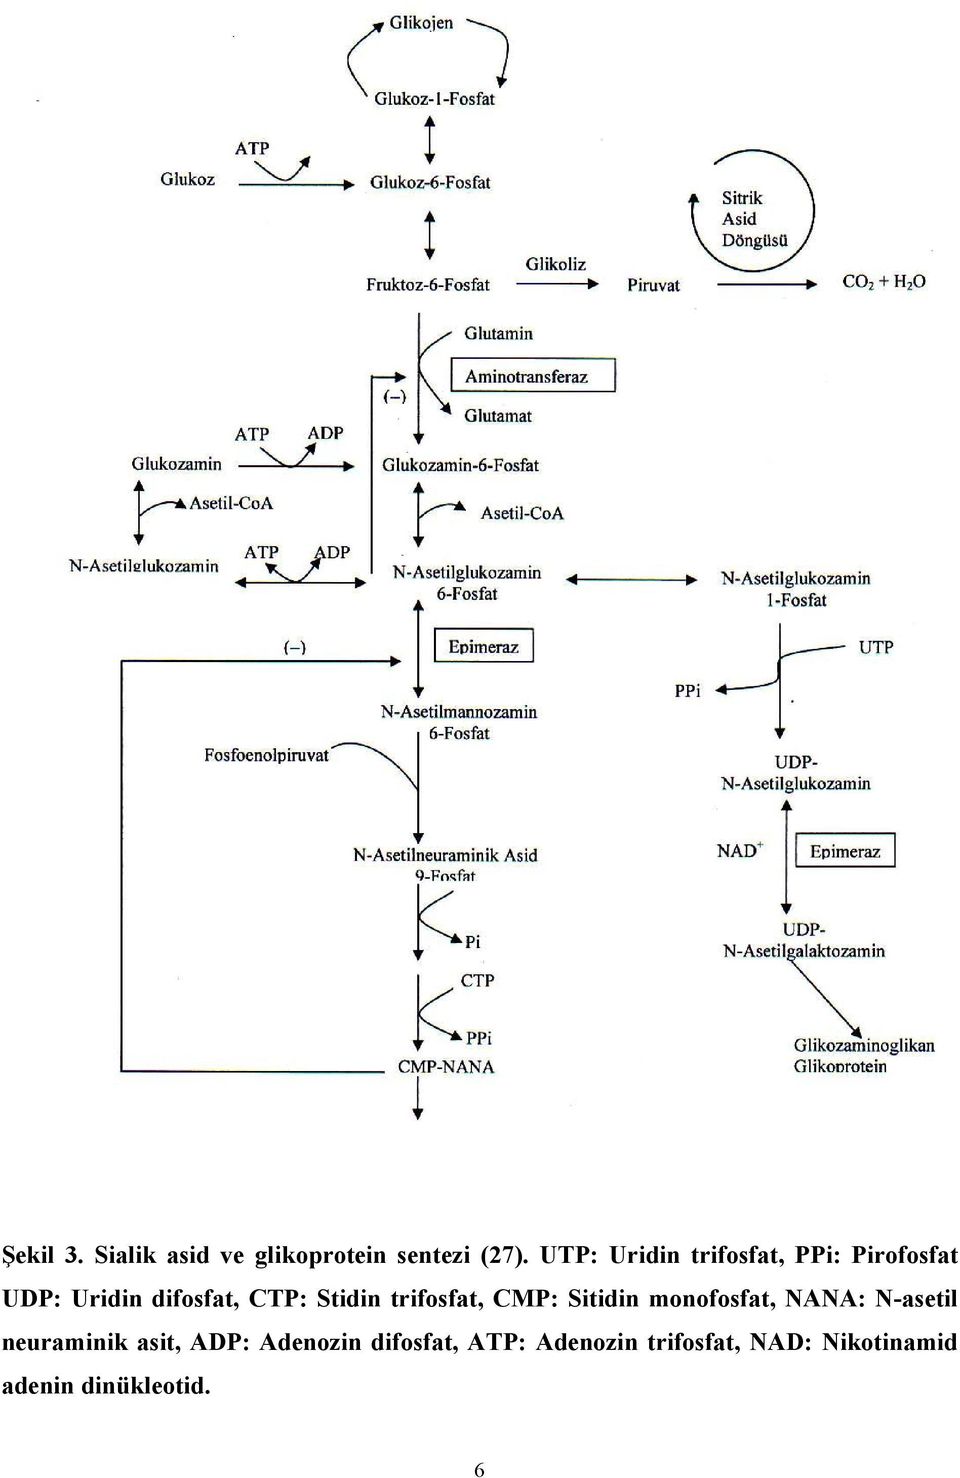 Stidin trifosfat, CMP: Sitidin monofosfat, NANA: N-asetil neuraminik